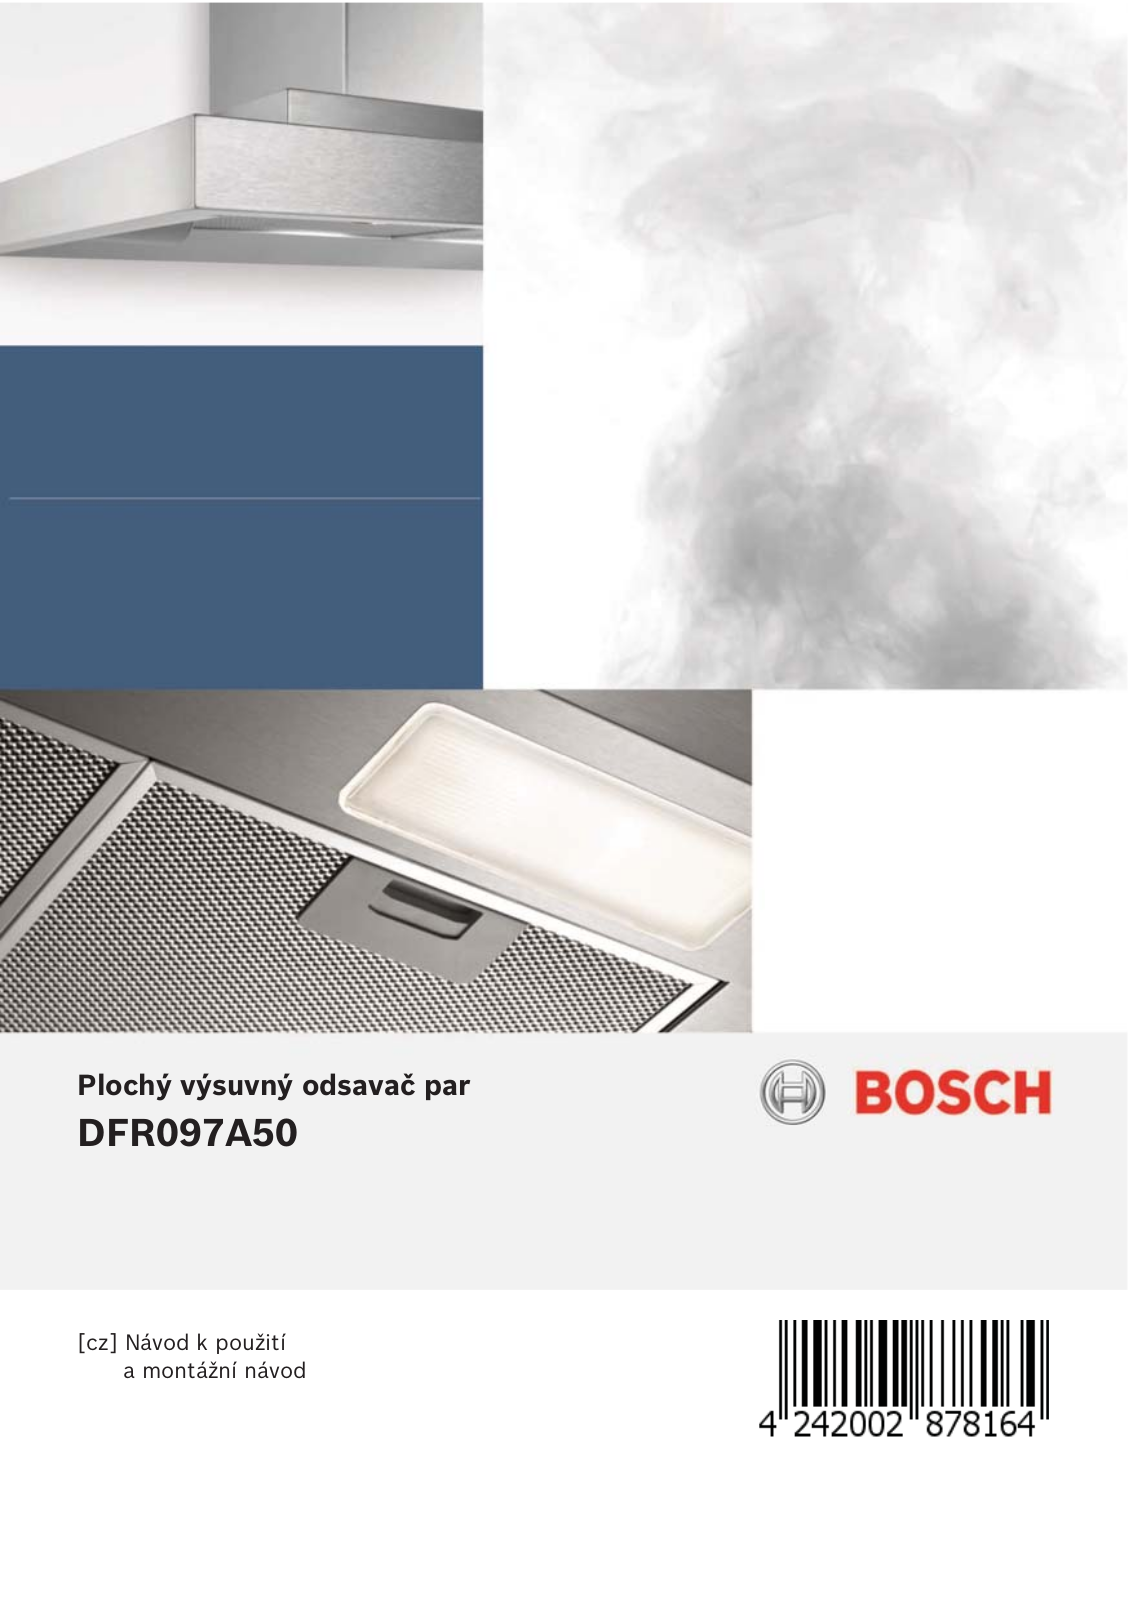 Bosch DFR097A50 User Manual